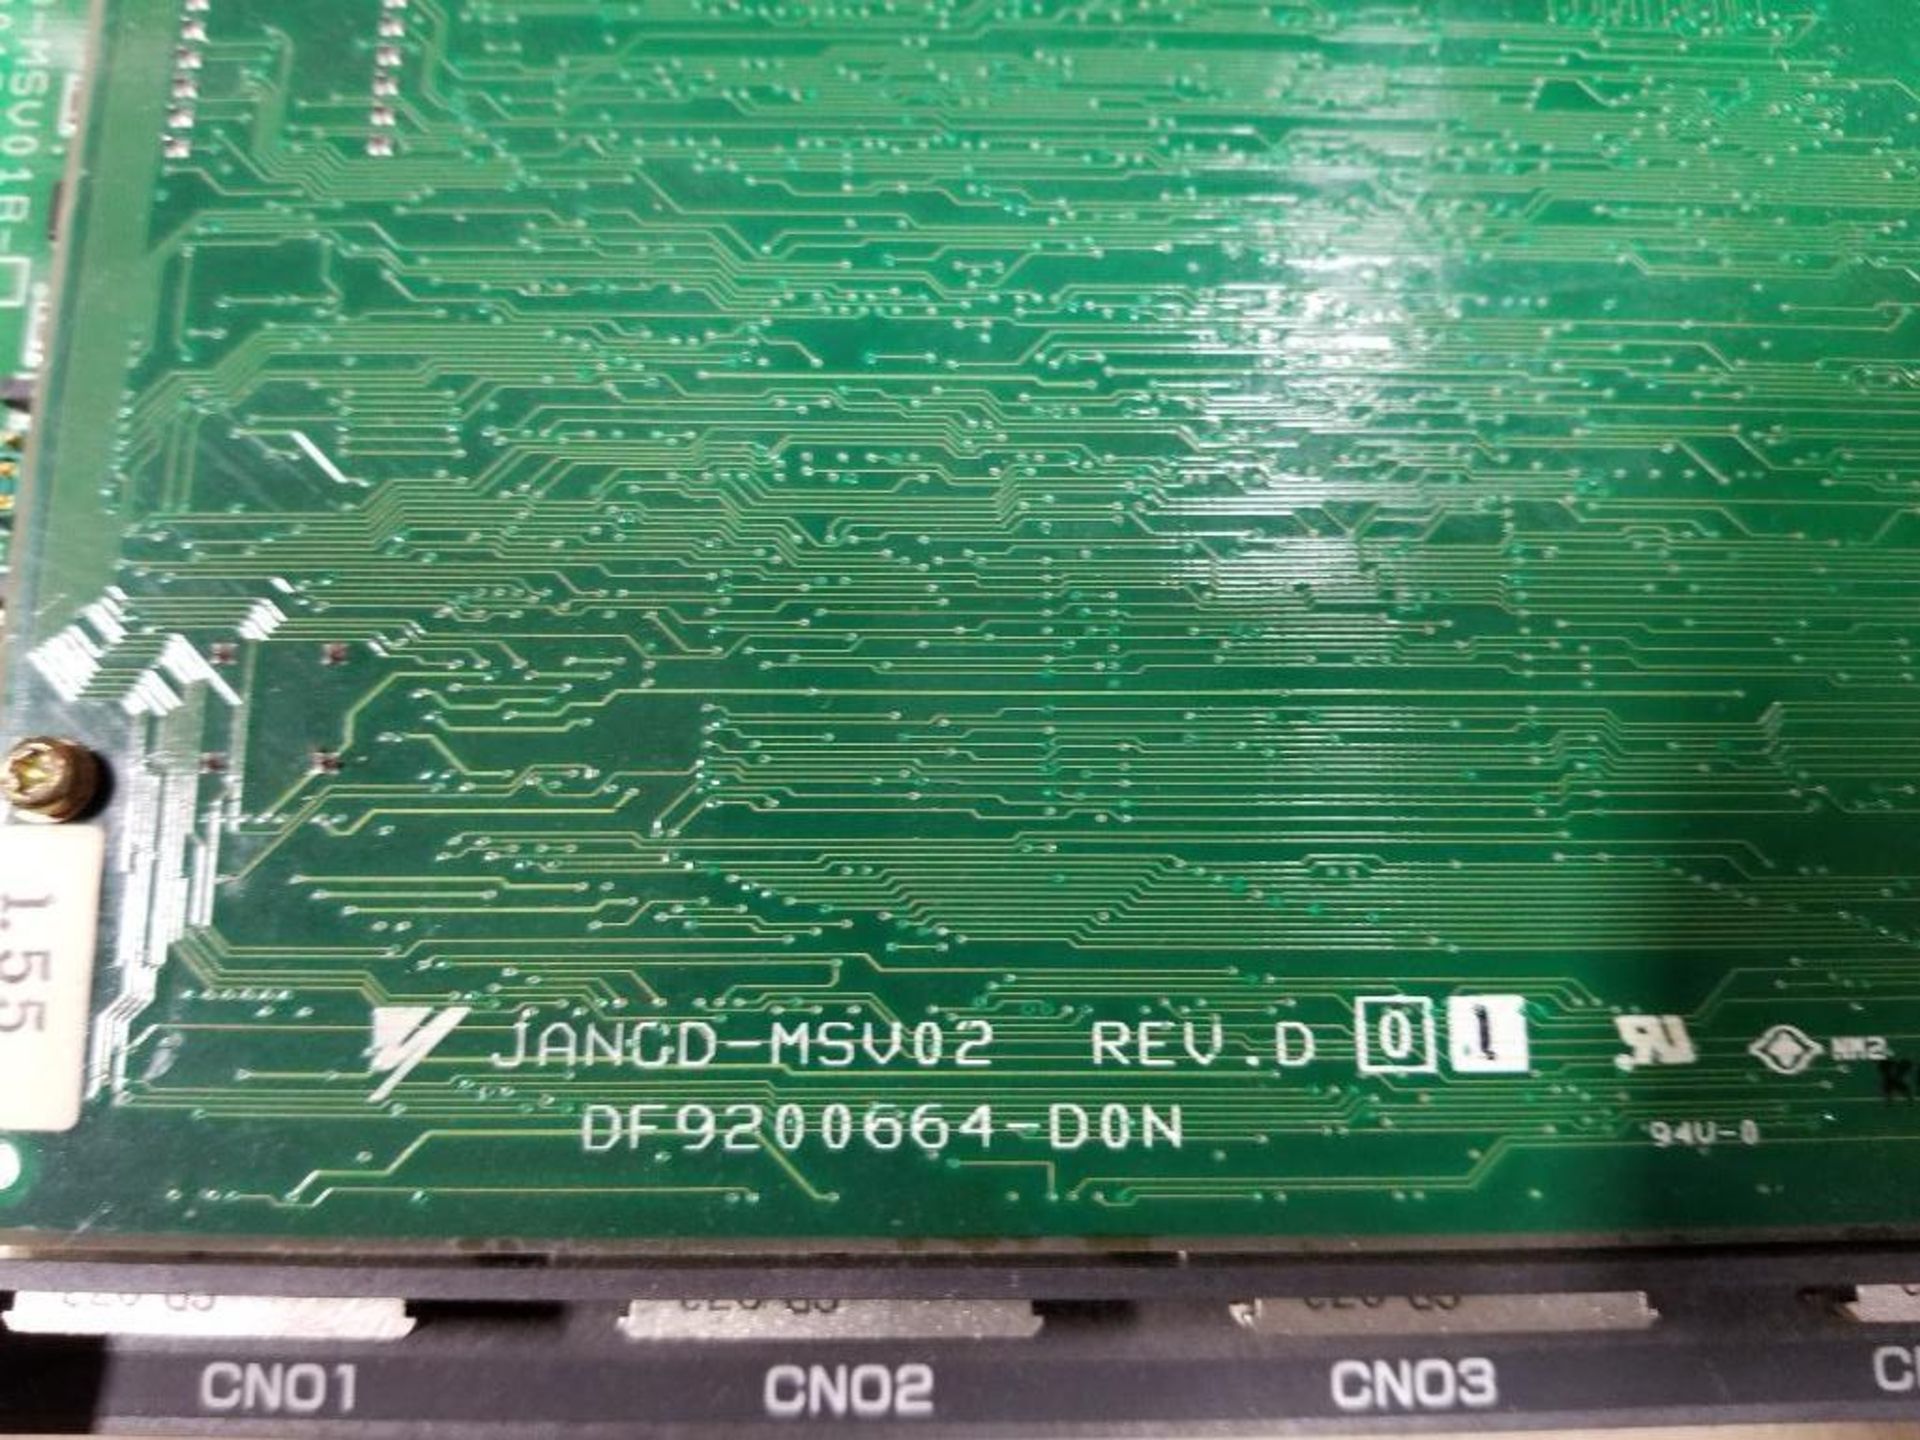 Qty 2 - Yaskawa JANCD-MSV01B CNC PC board. MSV018. - Image 4 of 10